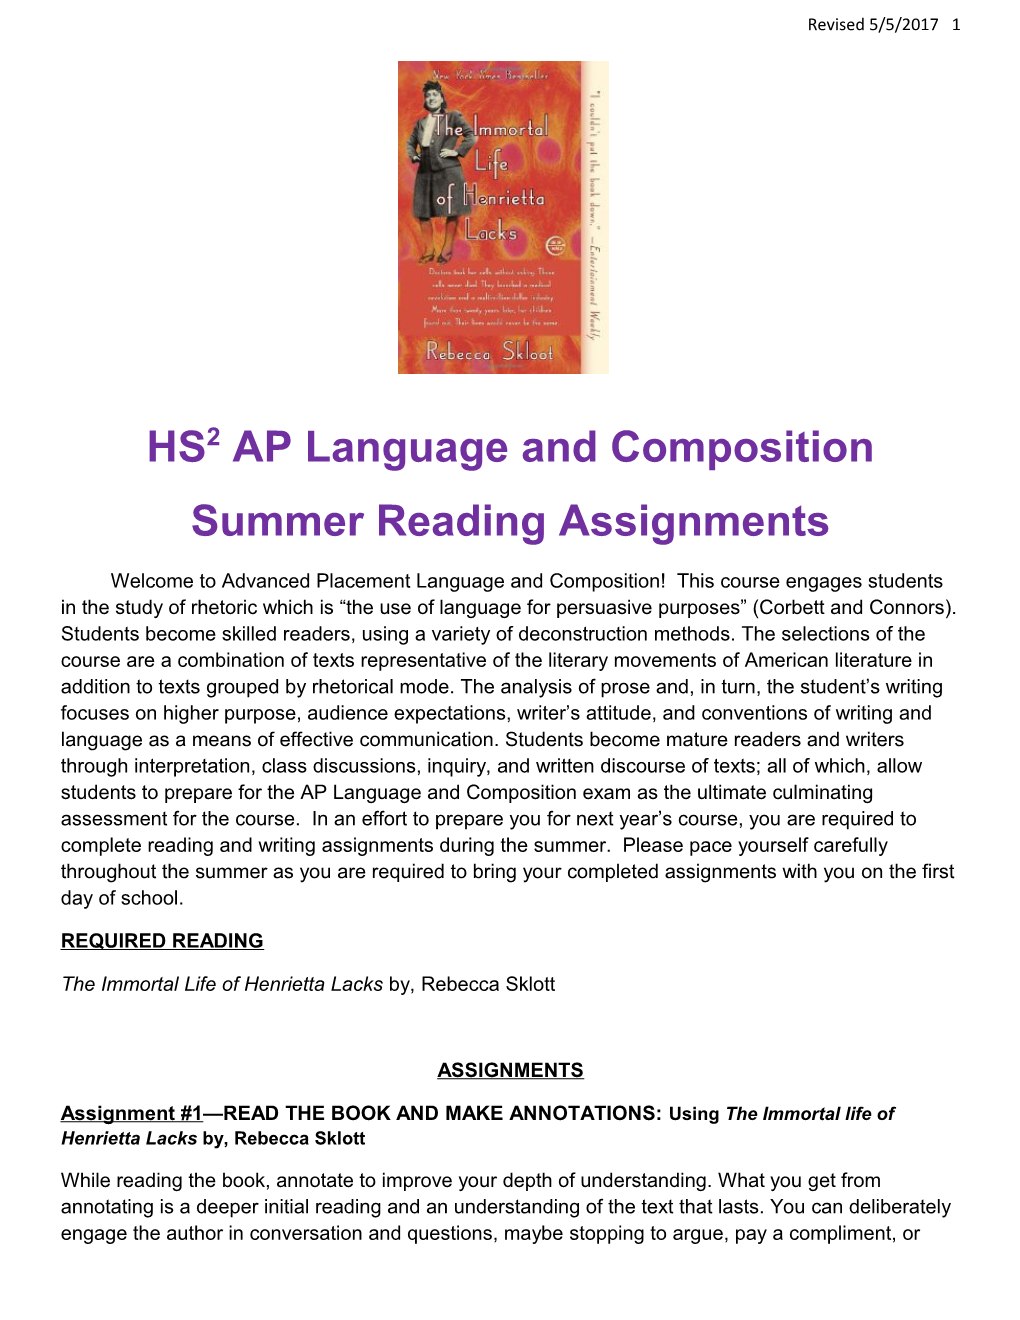 HS2 AP Language and Composition